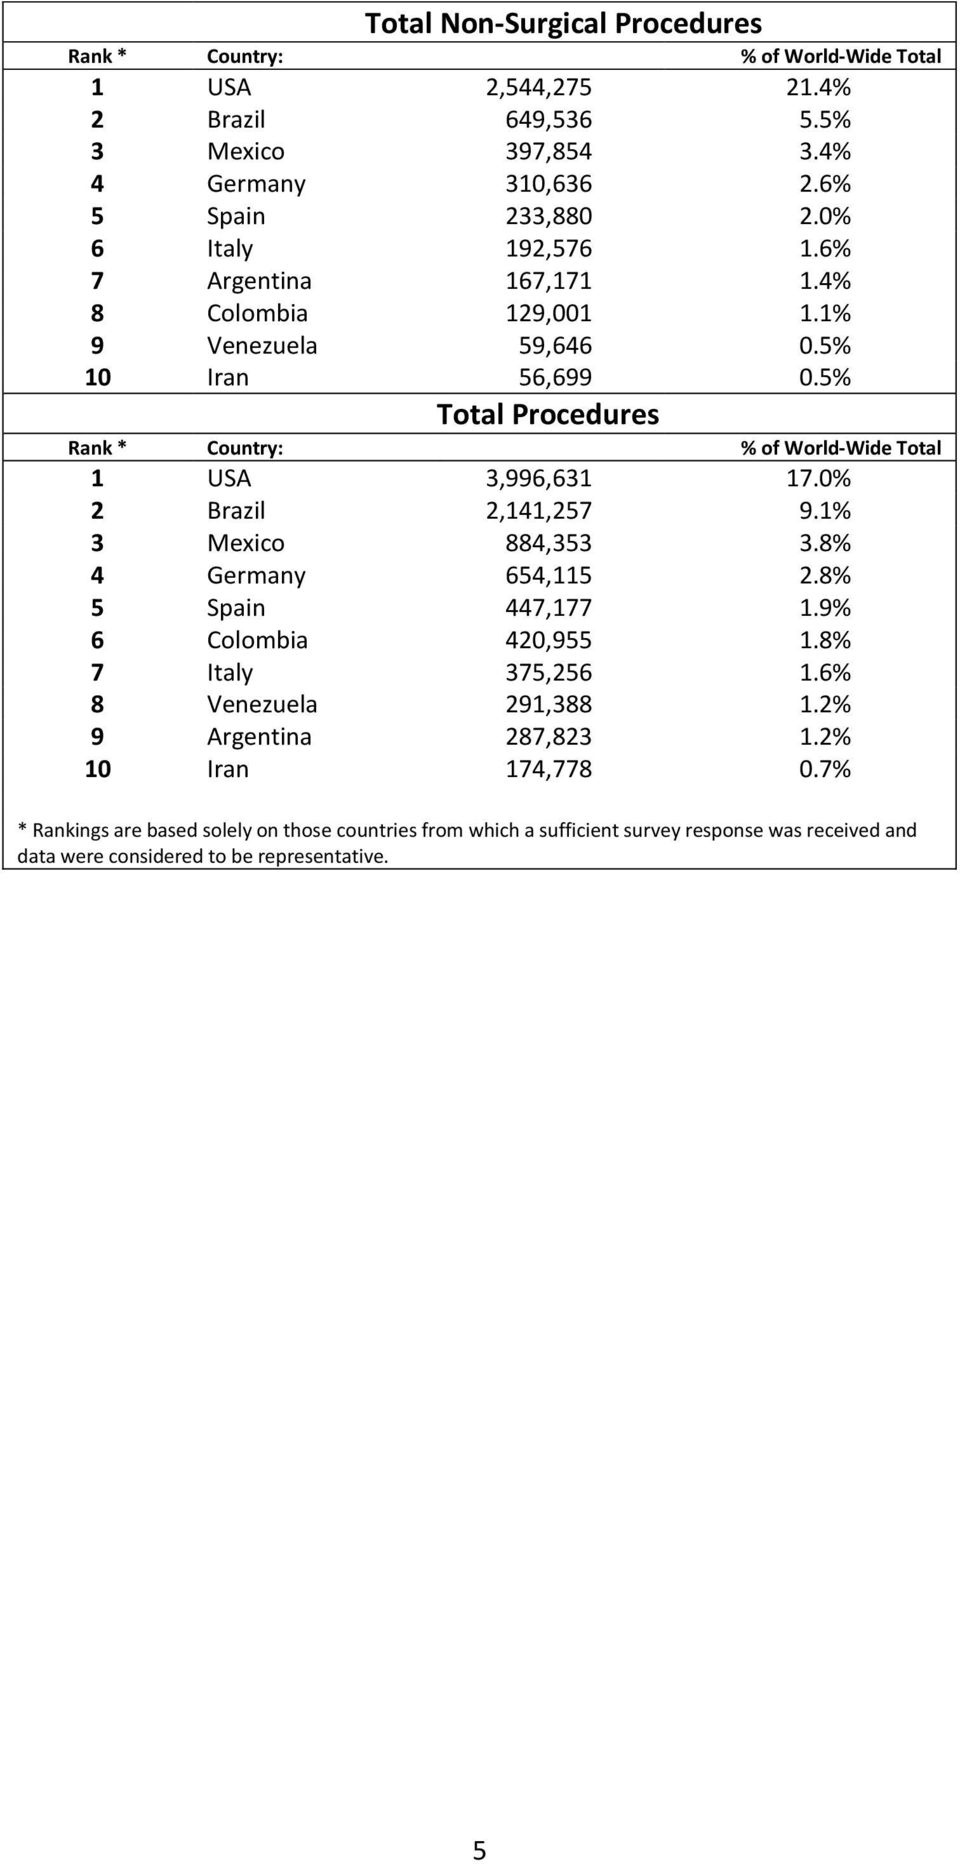 0% 2 Brazil 2,141,257 9.1% 3 Mexico 884,353 3.8% 4 Germany 654,115 2.8% 5 Spain 447,177 1.9% 6 Colombia 420,955 1.8% 7 Italy 375,256 1.6% 8 Venezuela 291,388 1.